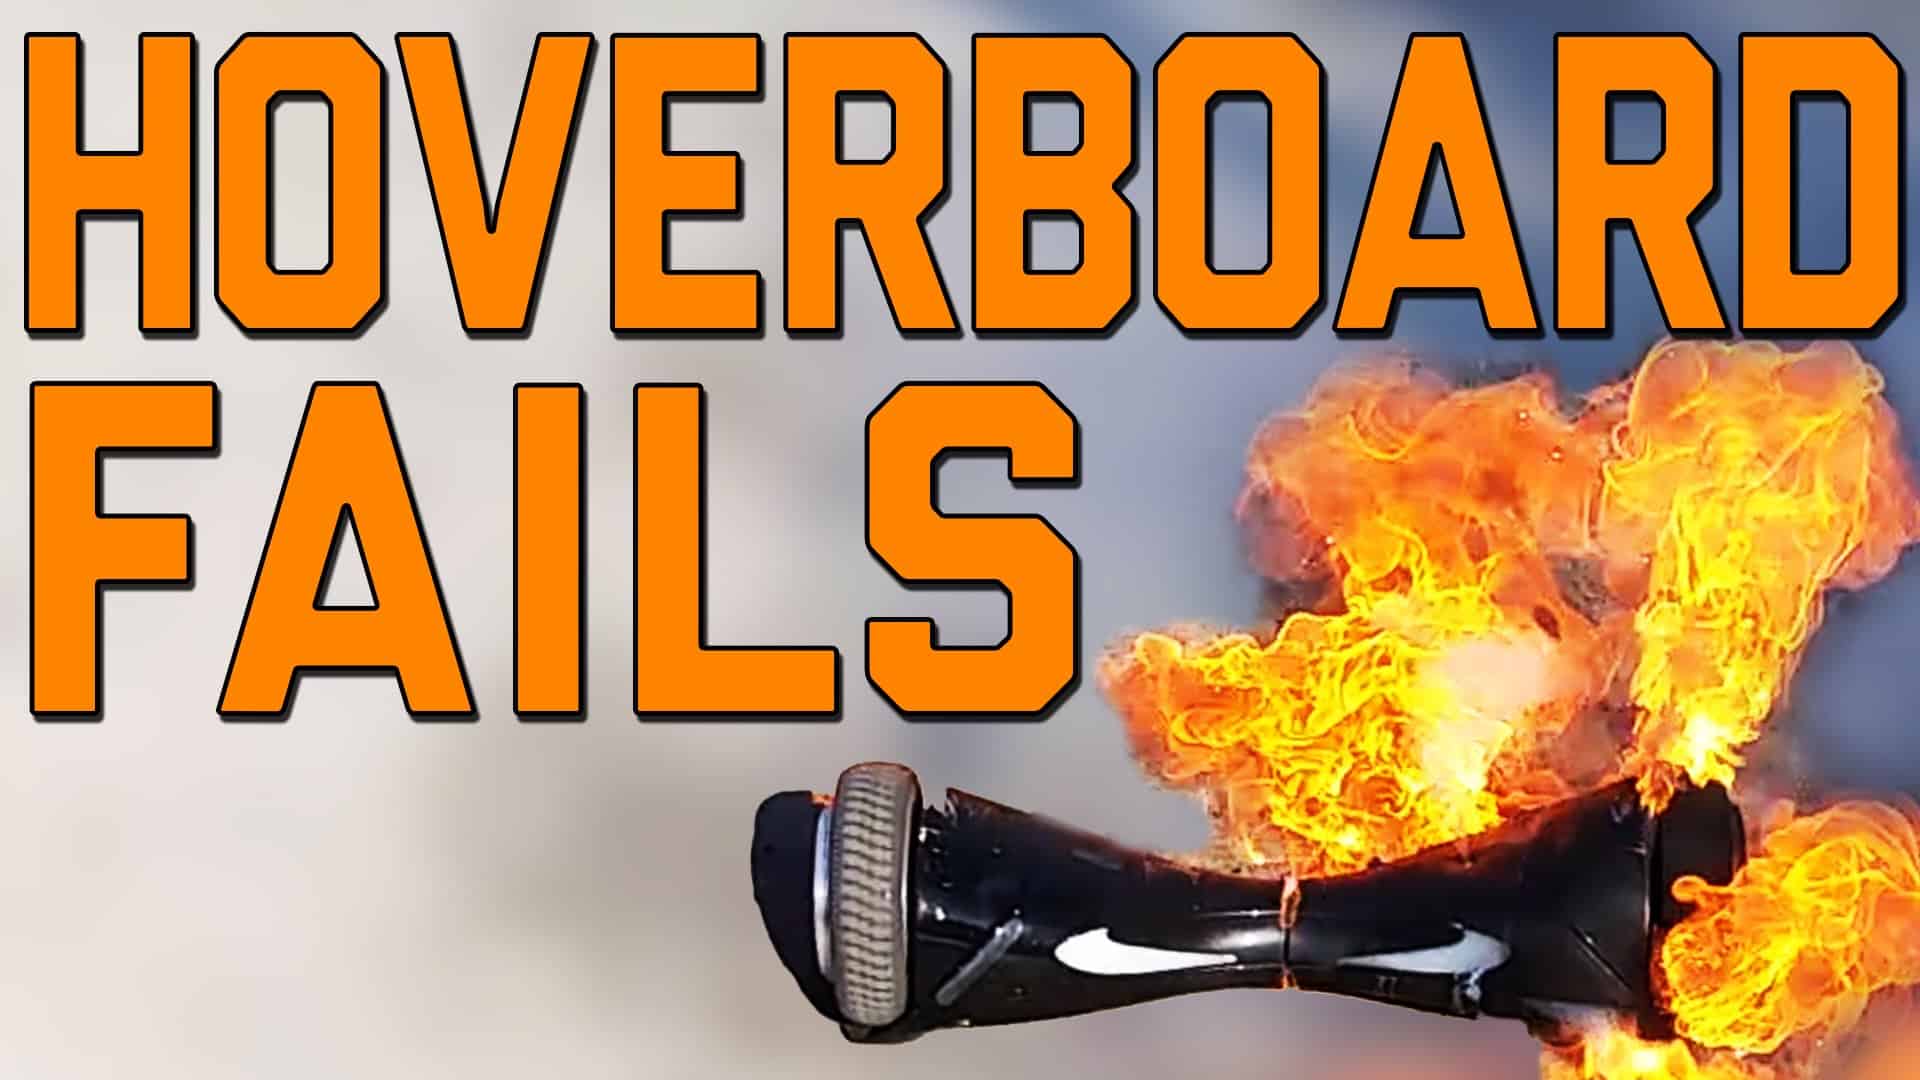 Persone vs tecnologia: l'Hoverboard fallisce